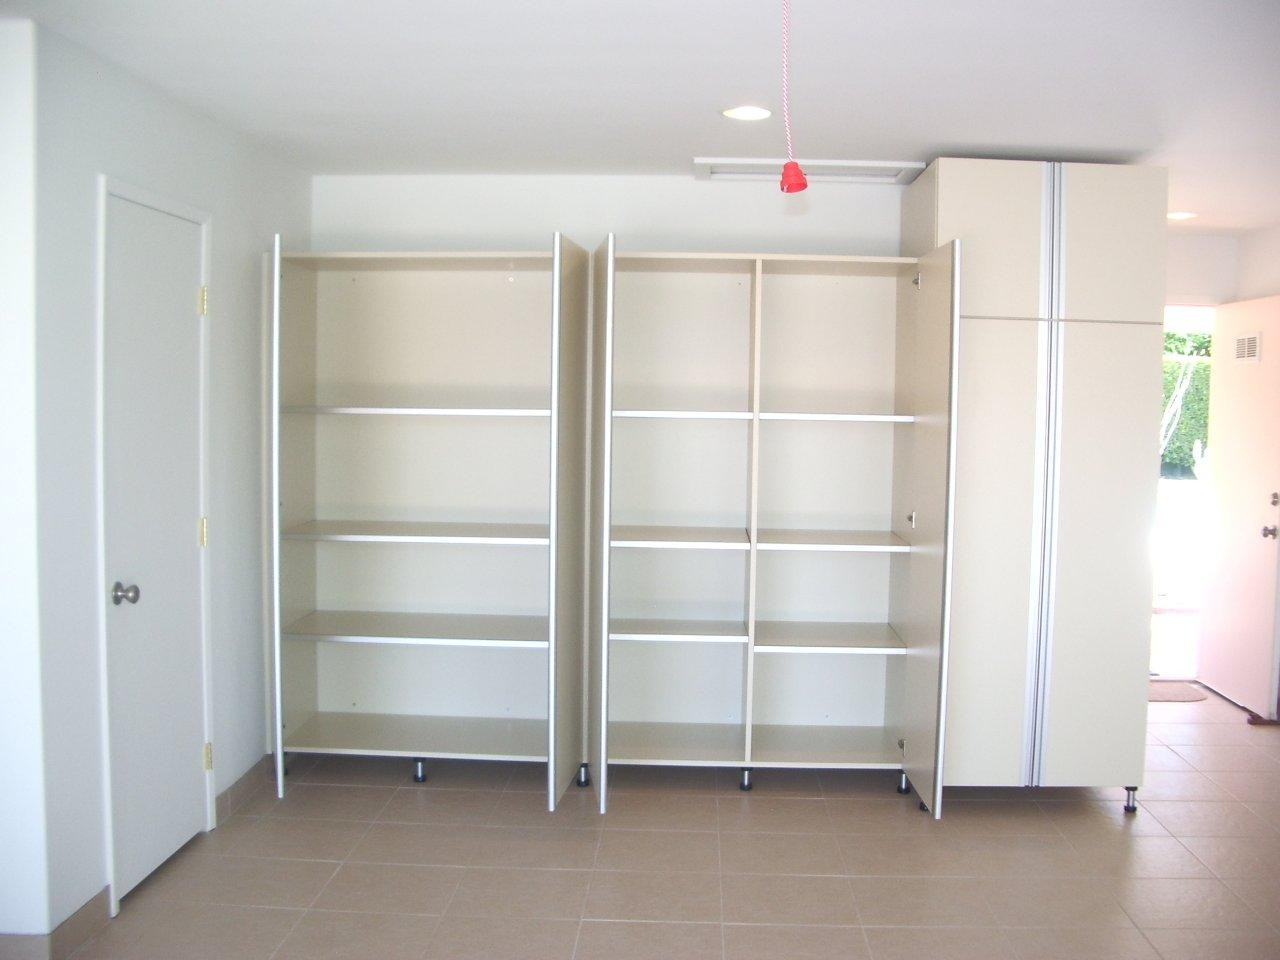 Best ideas about Storage Cabinets Garage
. Save or Pin Garage storage cabinets Now.